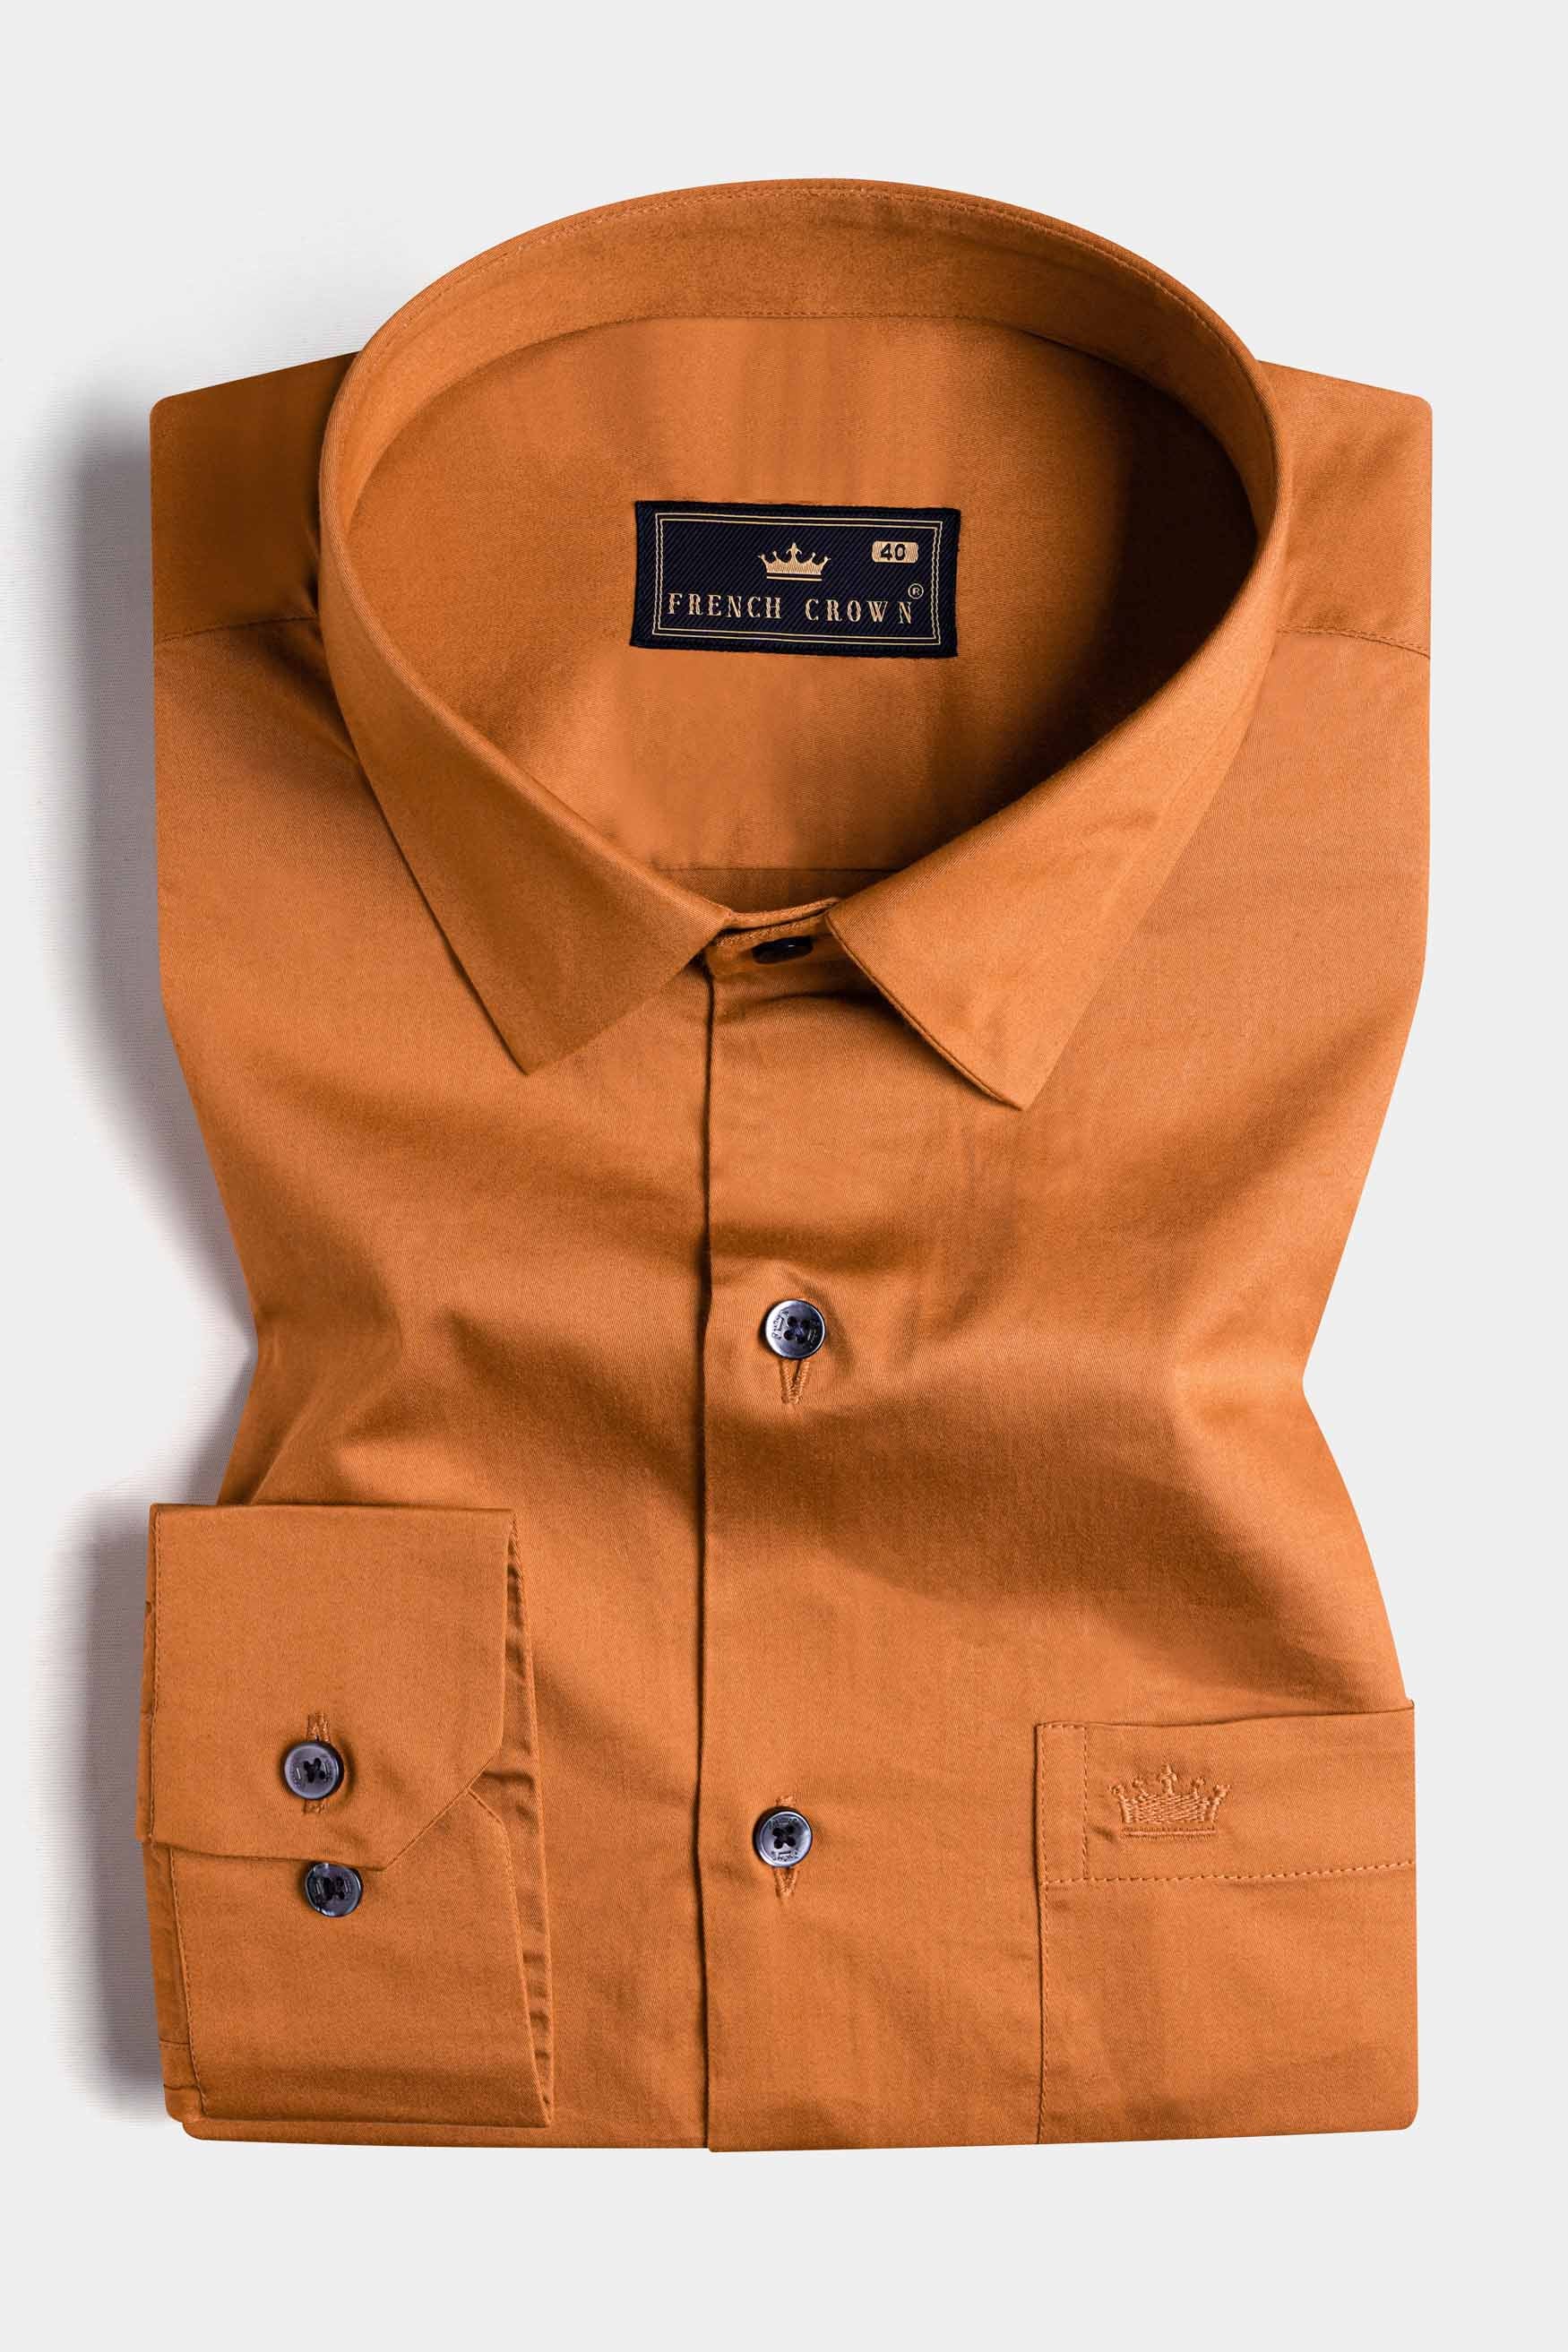 Raw Sienna Orange Subtle Sheen Super Soft Premium Cotton Shirt